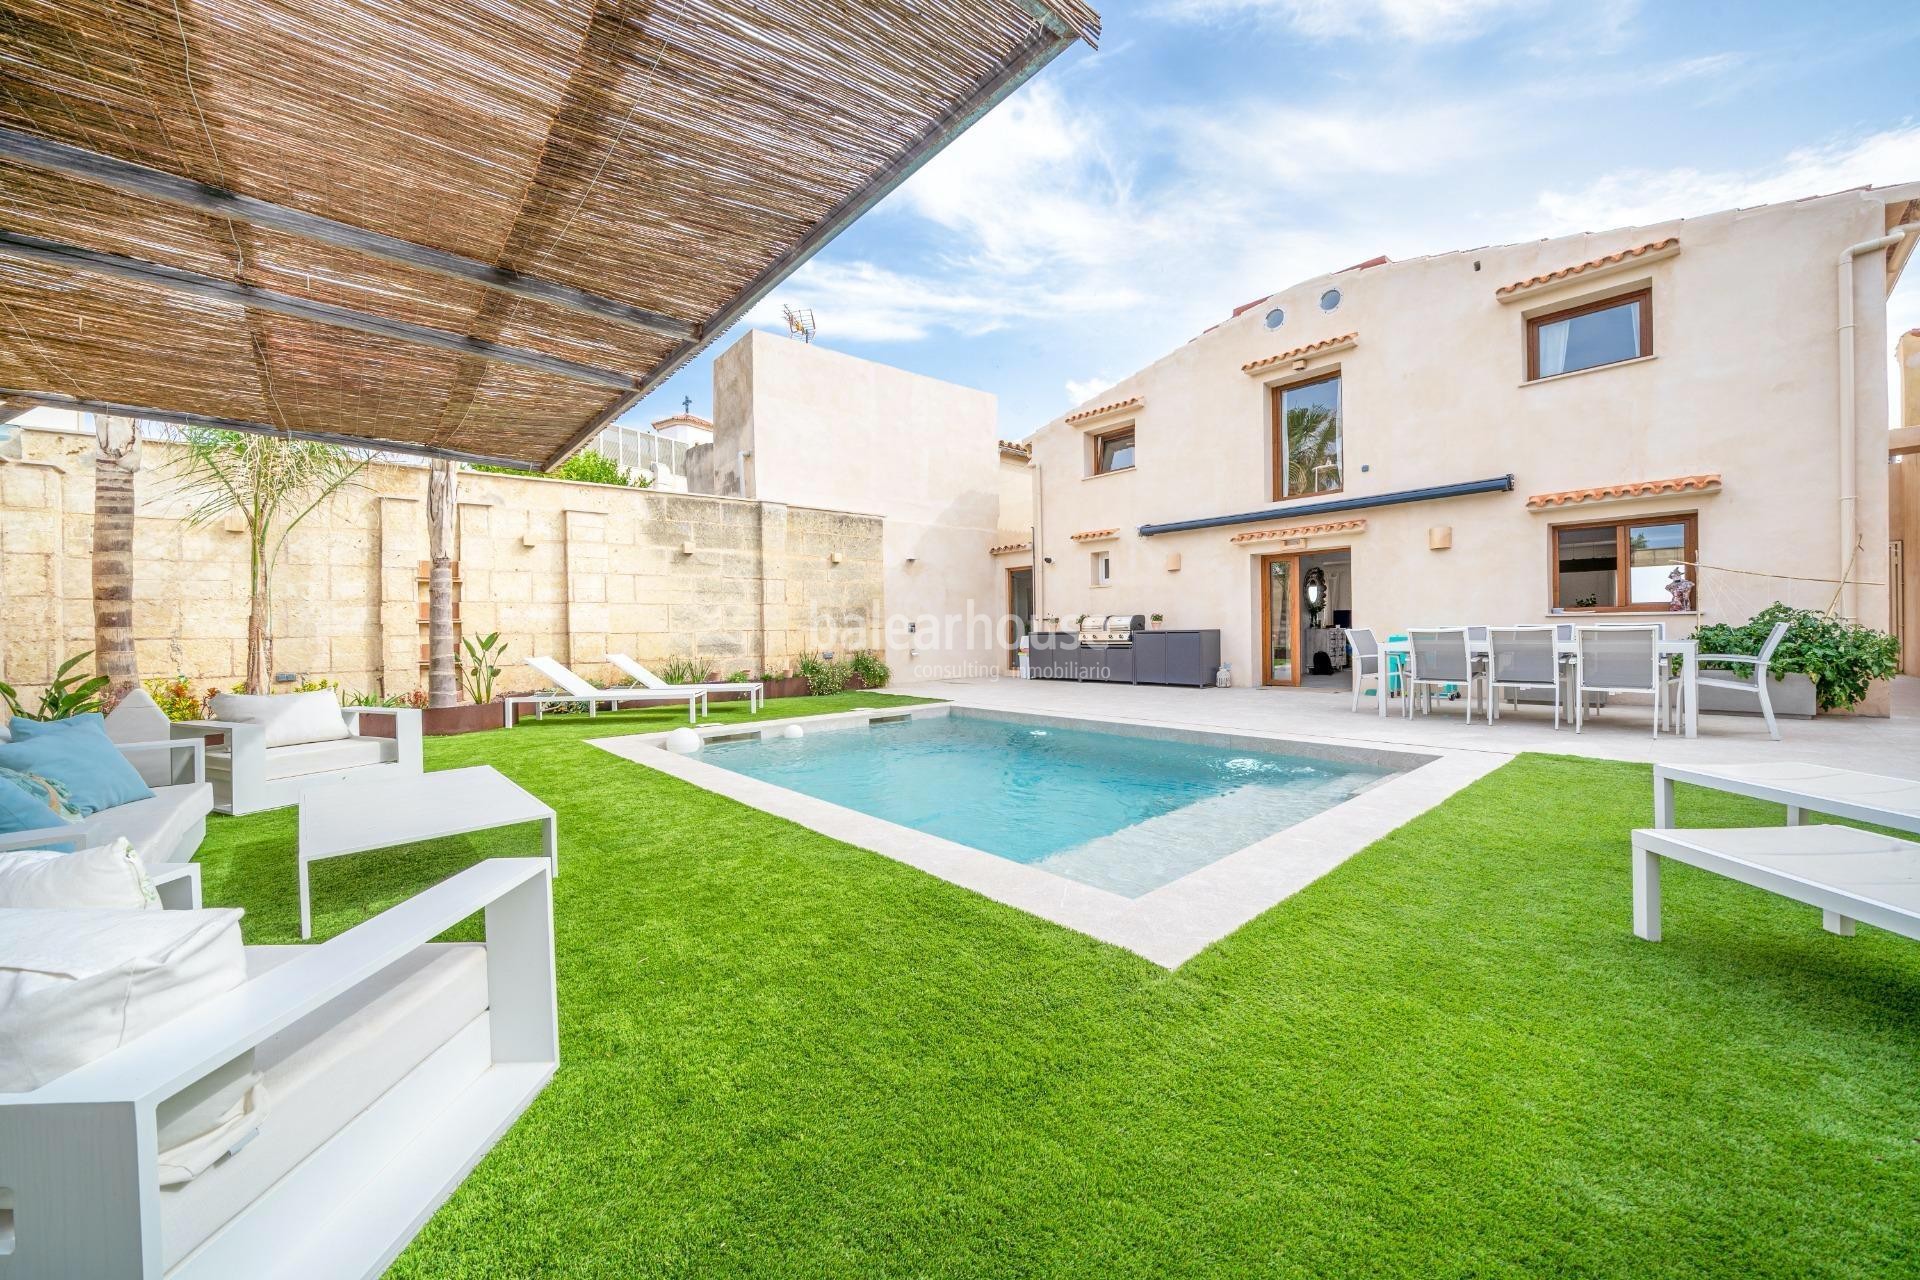 Fabulosa villa moderna frente al mar con terrazas, gran jardín y piscina en la costa de Palma